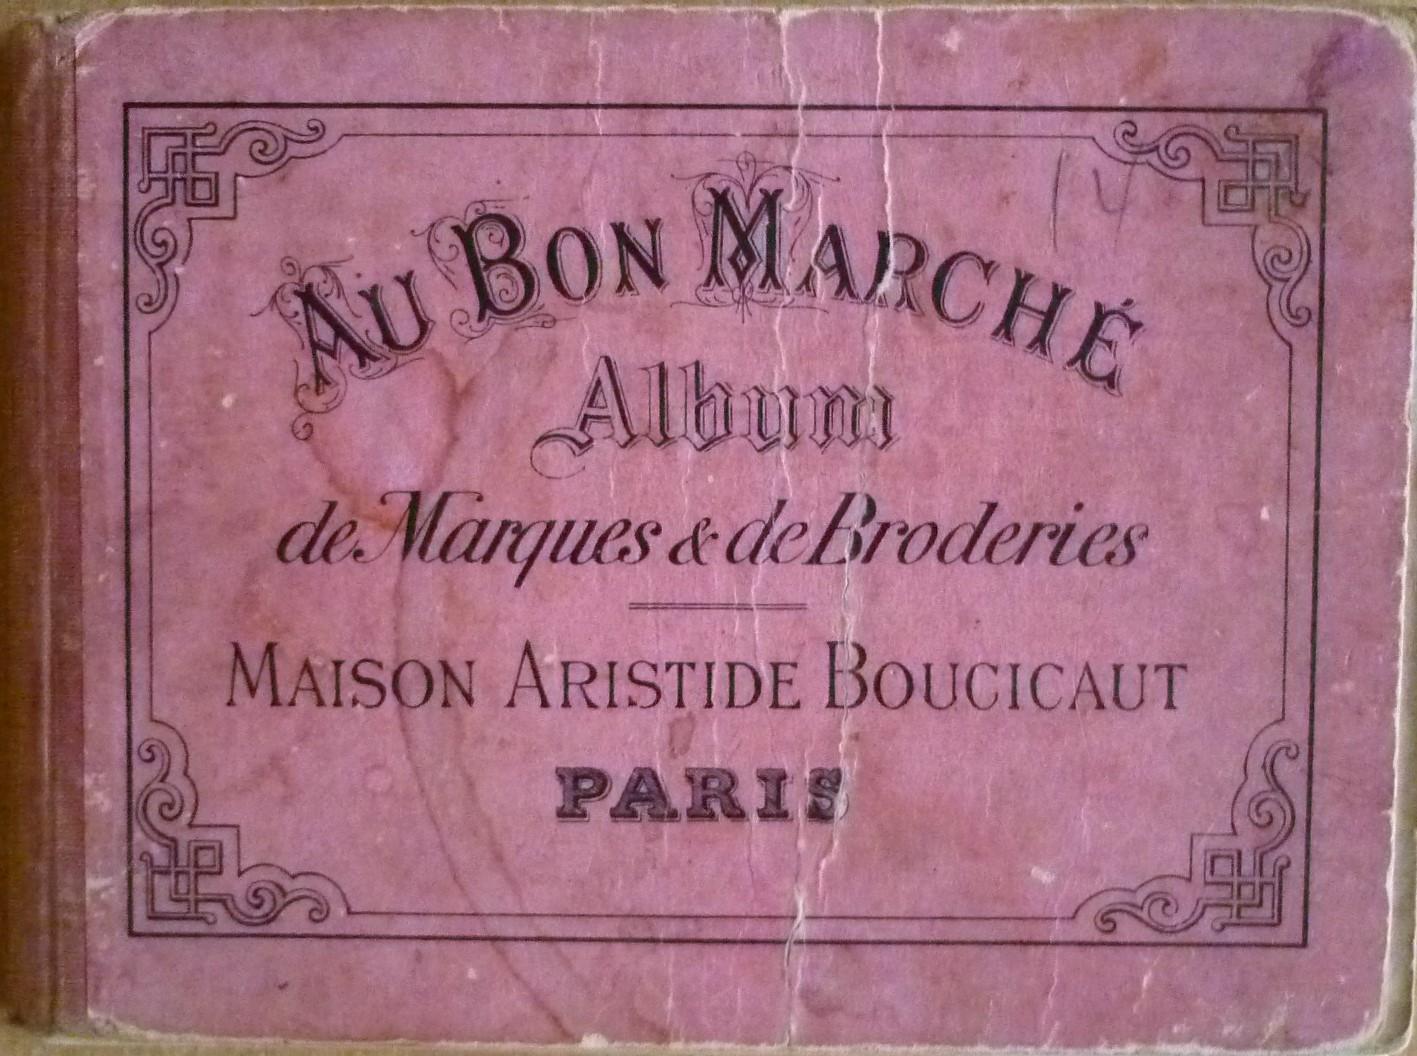 Maison Aristide Boucicaut - Au bon marché : Album de marques & de broderies